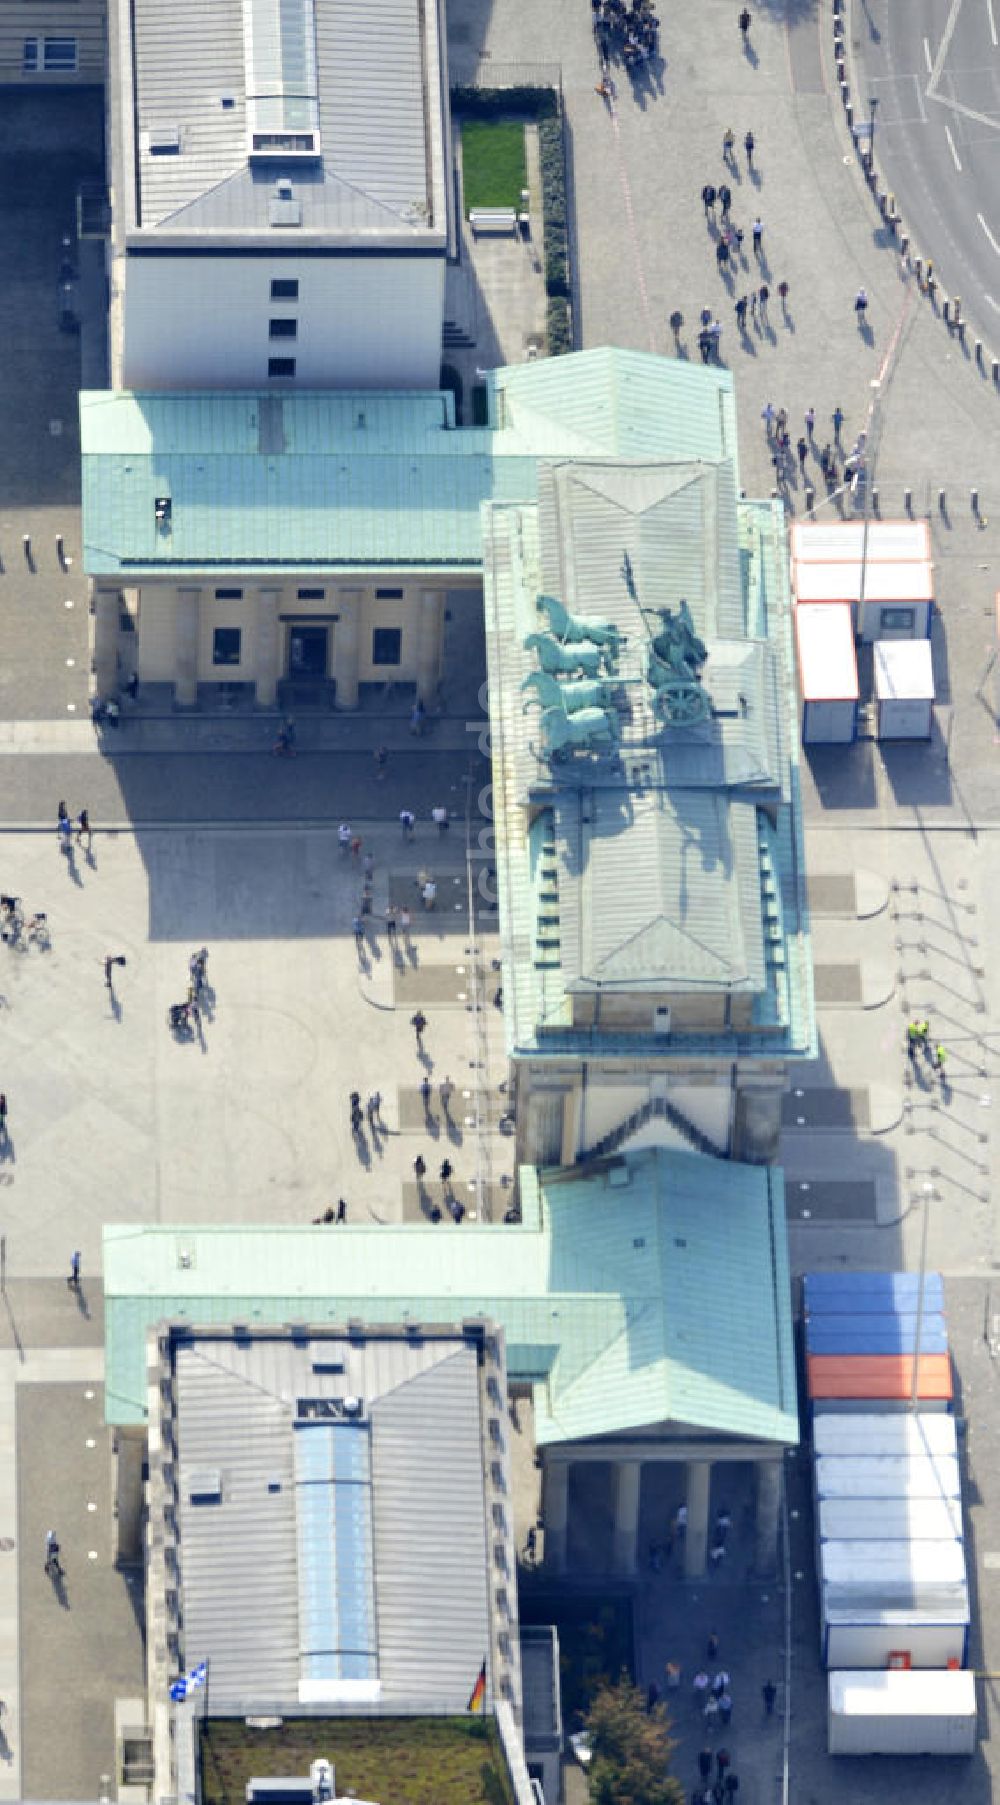 Luftbild Berlin Mitte - Sehenswürdigkeit Brandenburger Tor am Pariser Platz in Berlin-Mitte